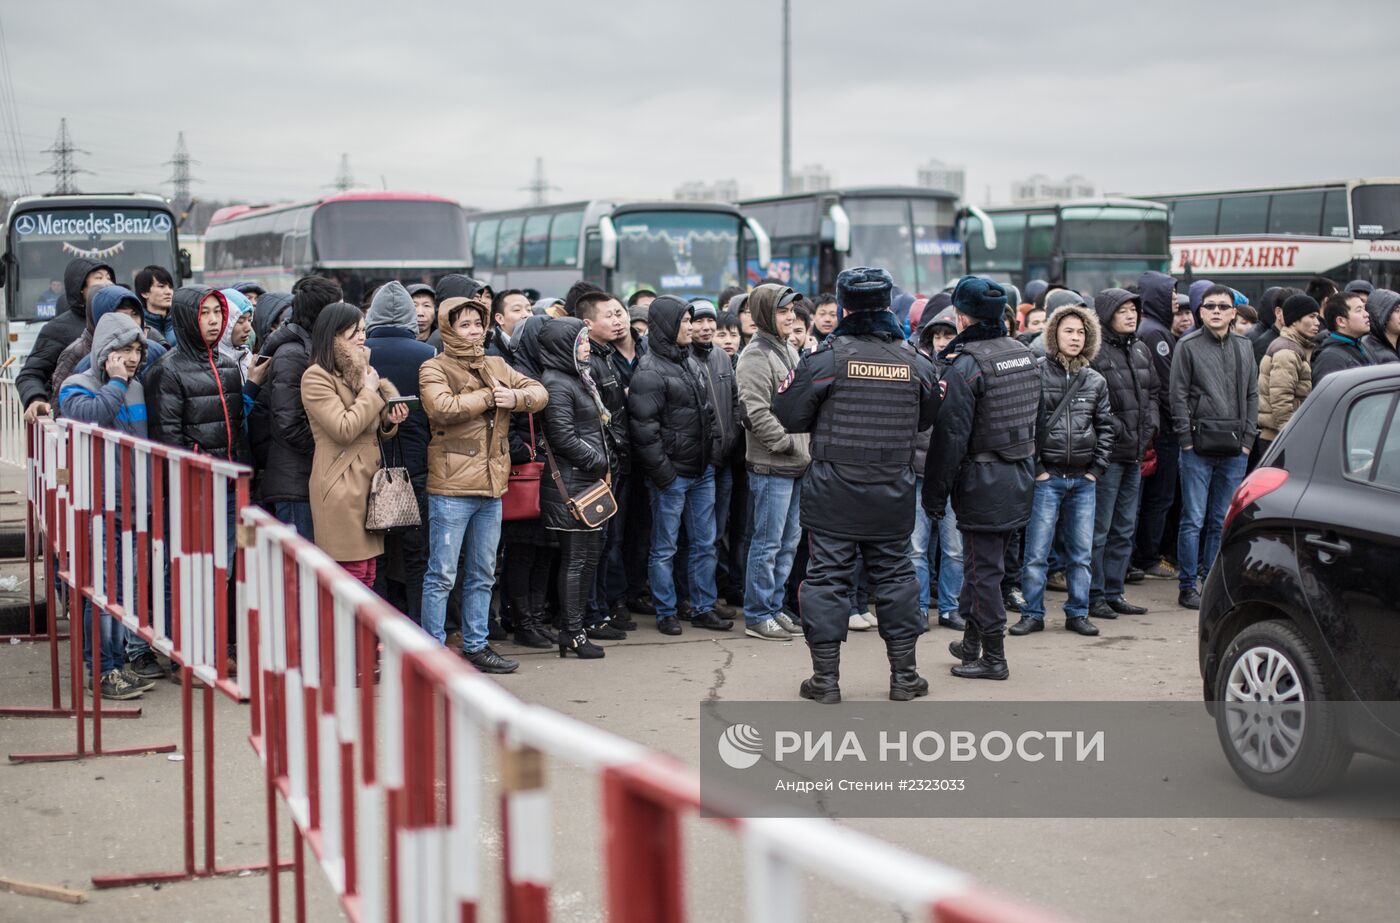 Полиция проводит проверку миграционного законодательства в ТЦ "Москва" в Люблино